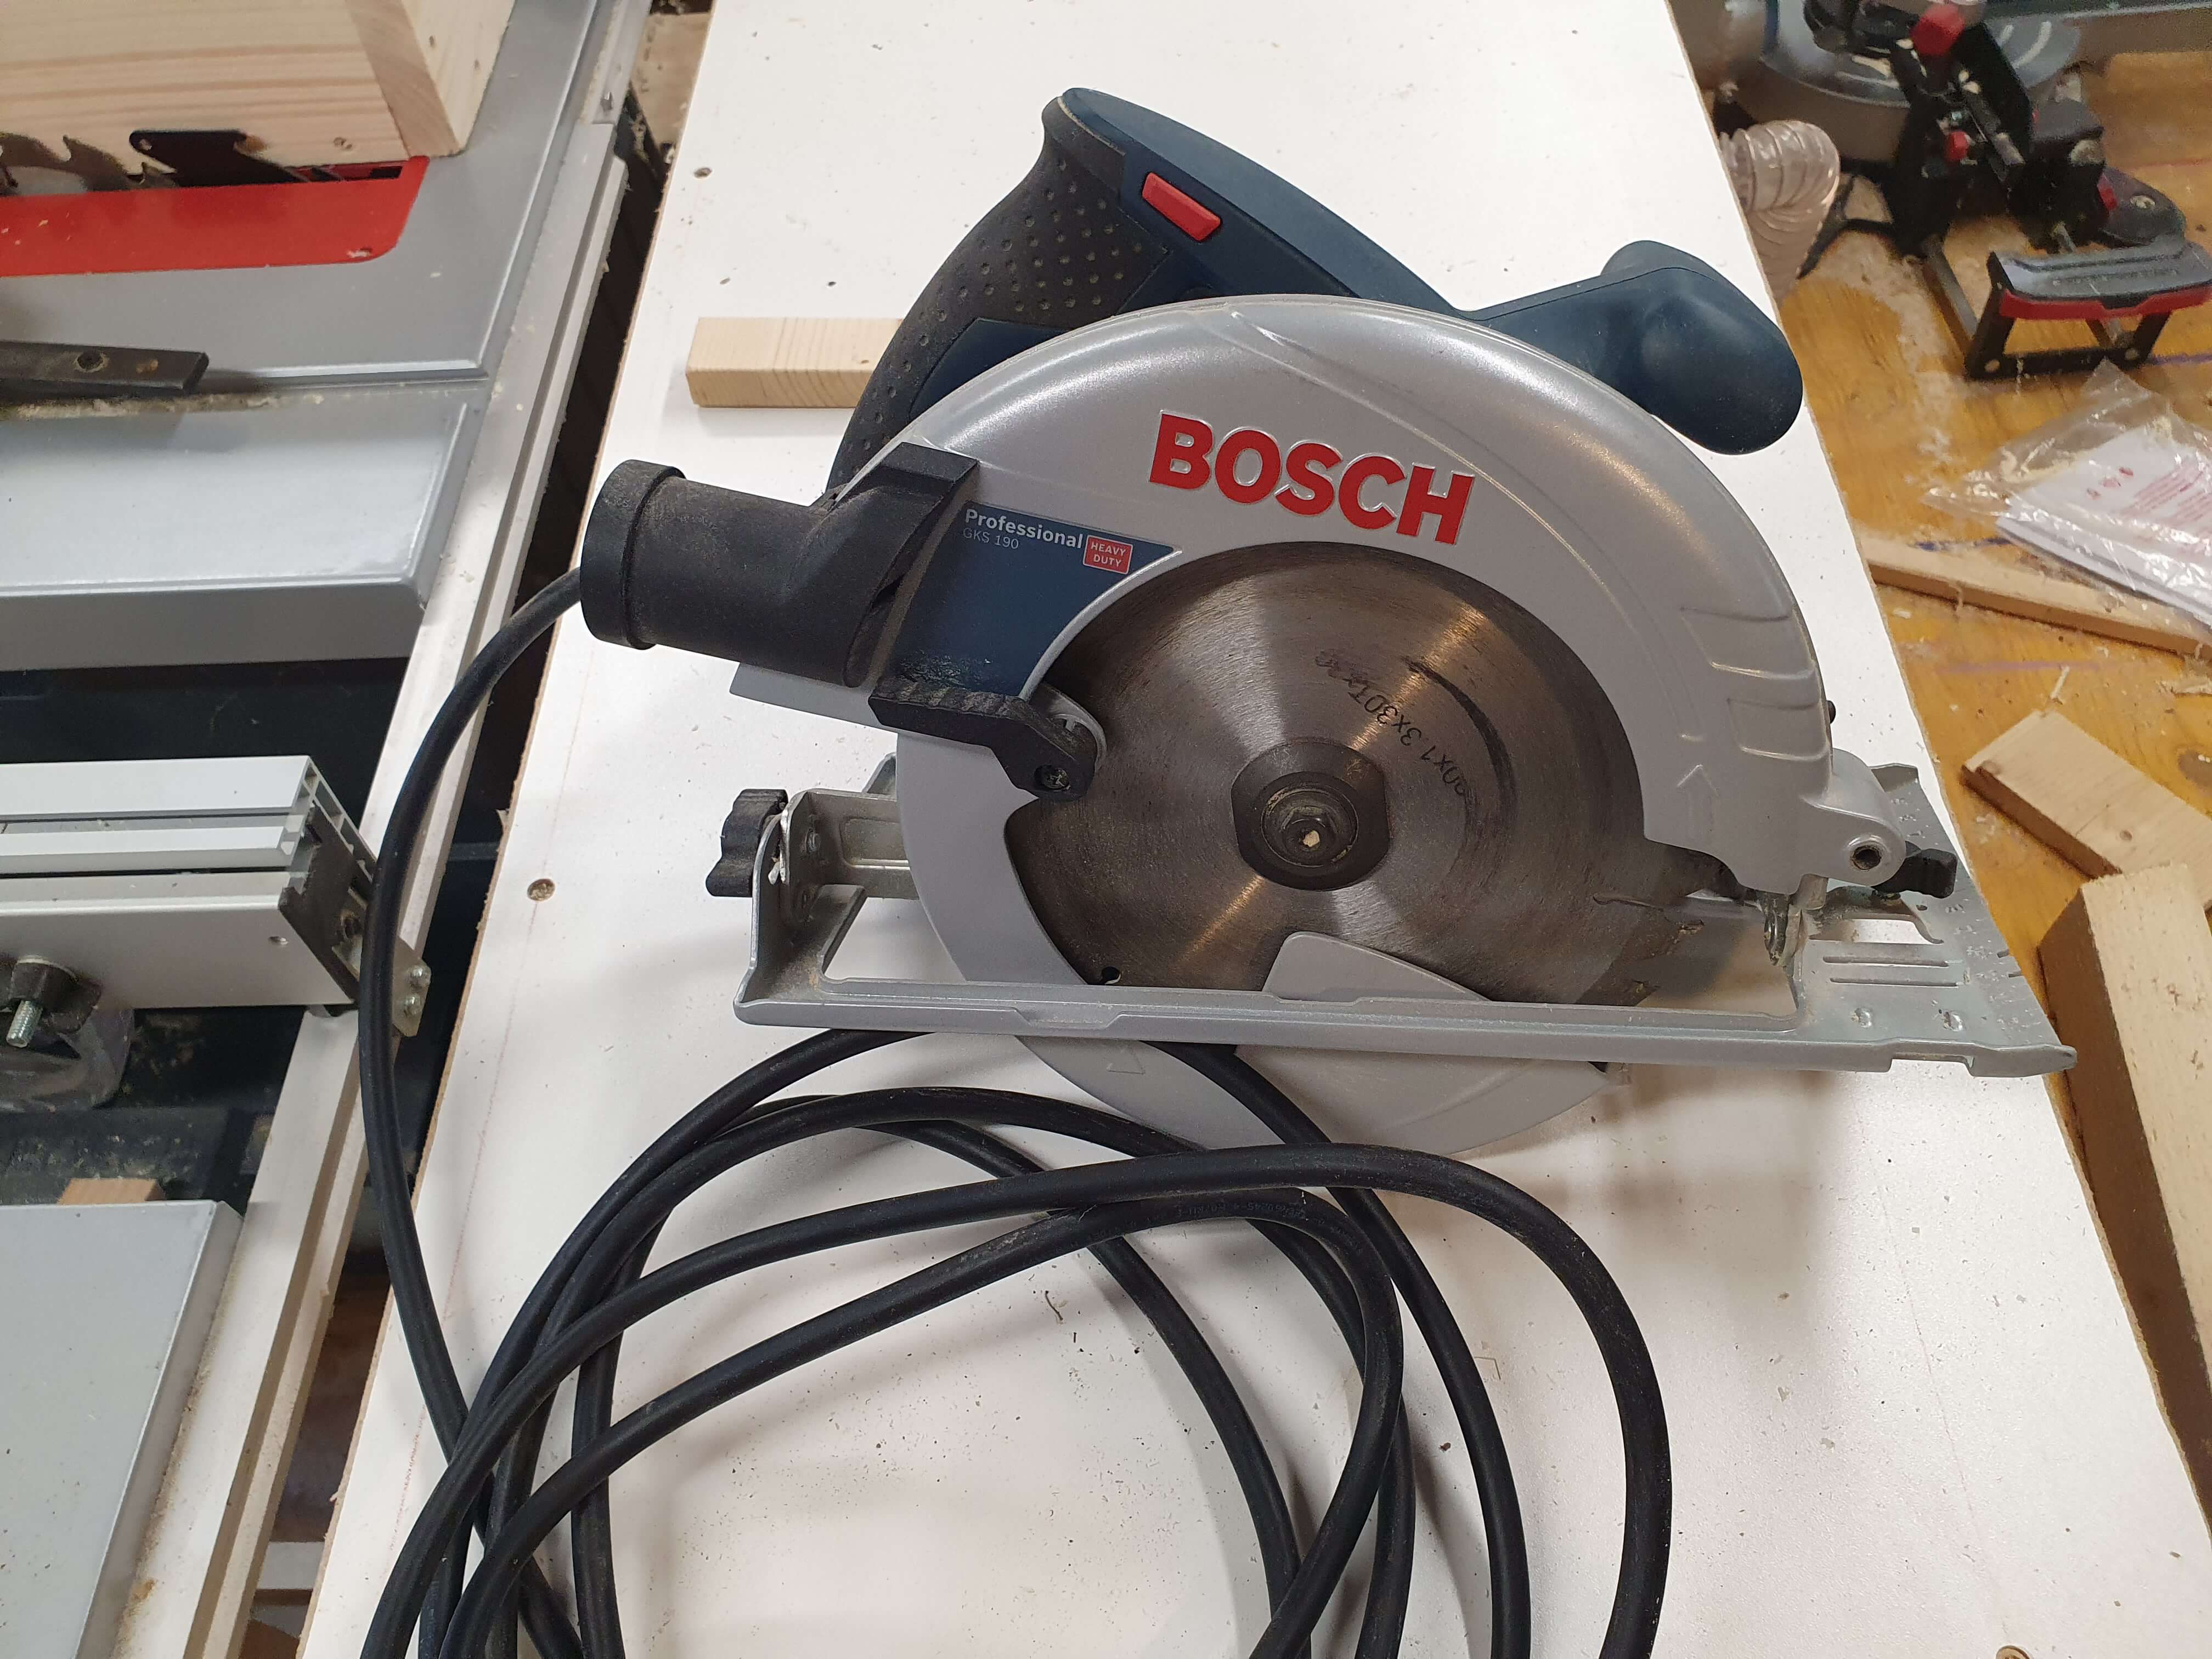 Handkreissäge Bosch Professionell 1400Watt 70mm Schnitttiefe - 142eaf6e-487c-4adc-ae80-46f8209bca63